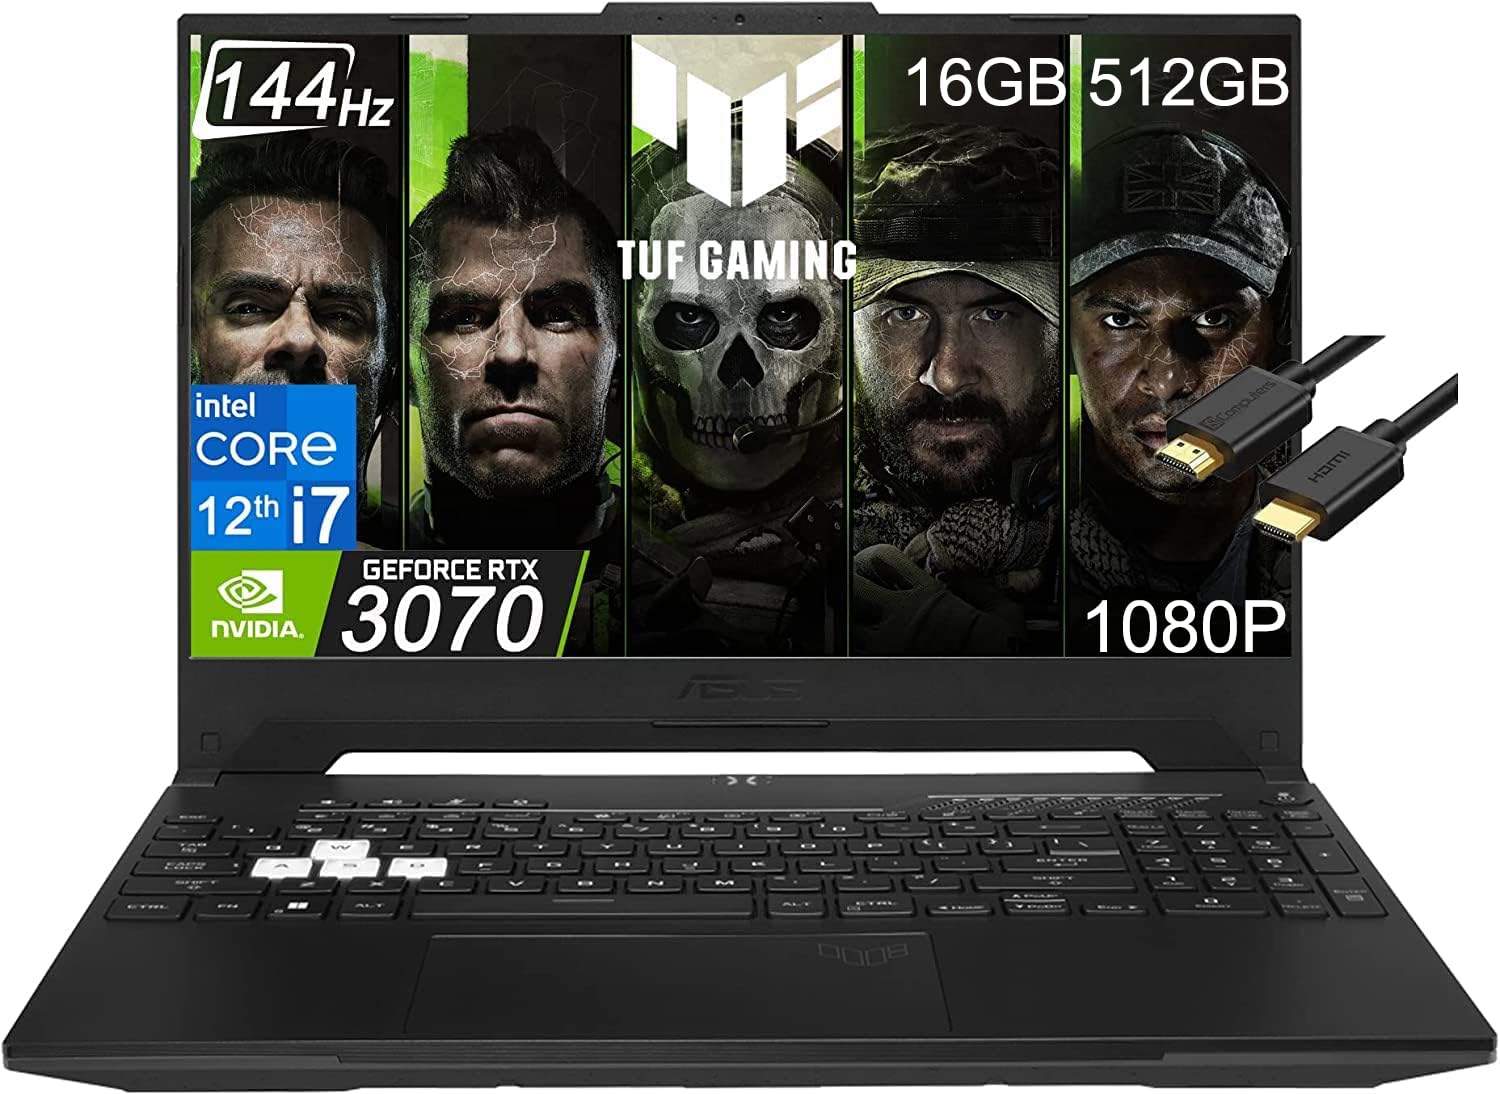 ASUS TUF Gaming Laptop F15 Dash 15.6" 144Hz